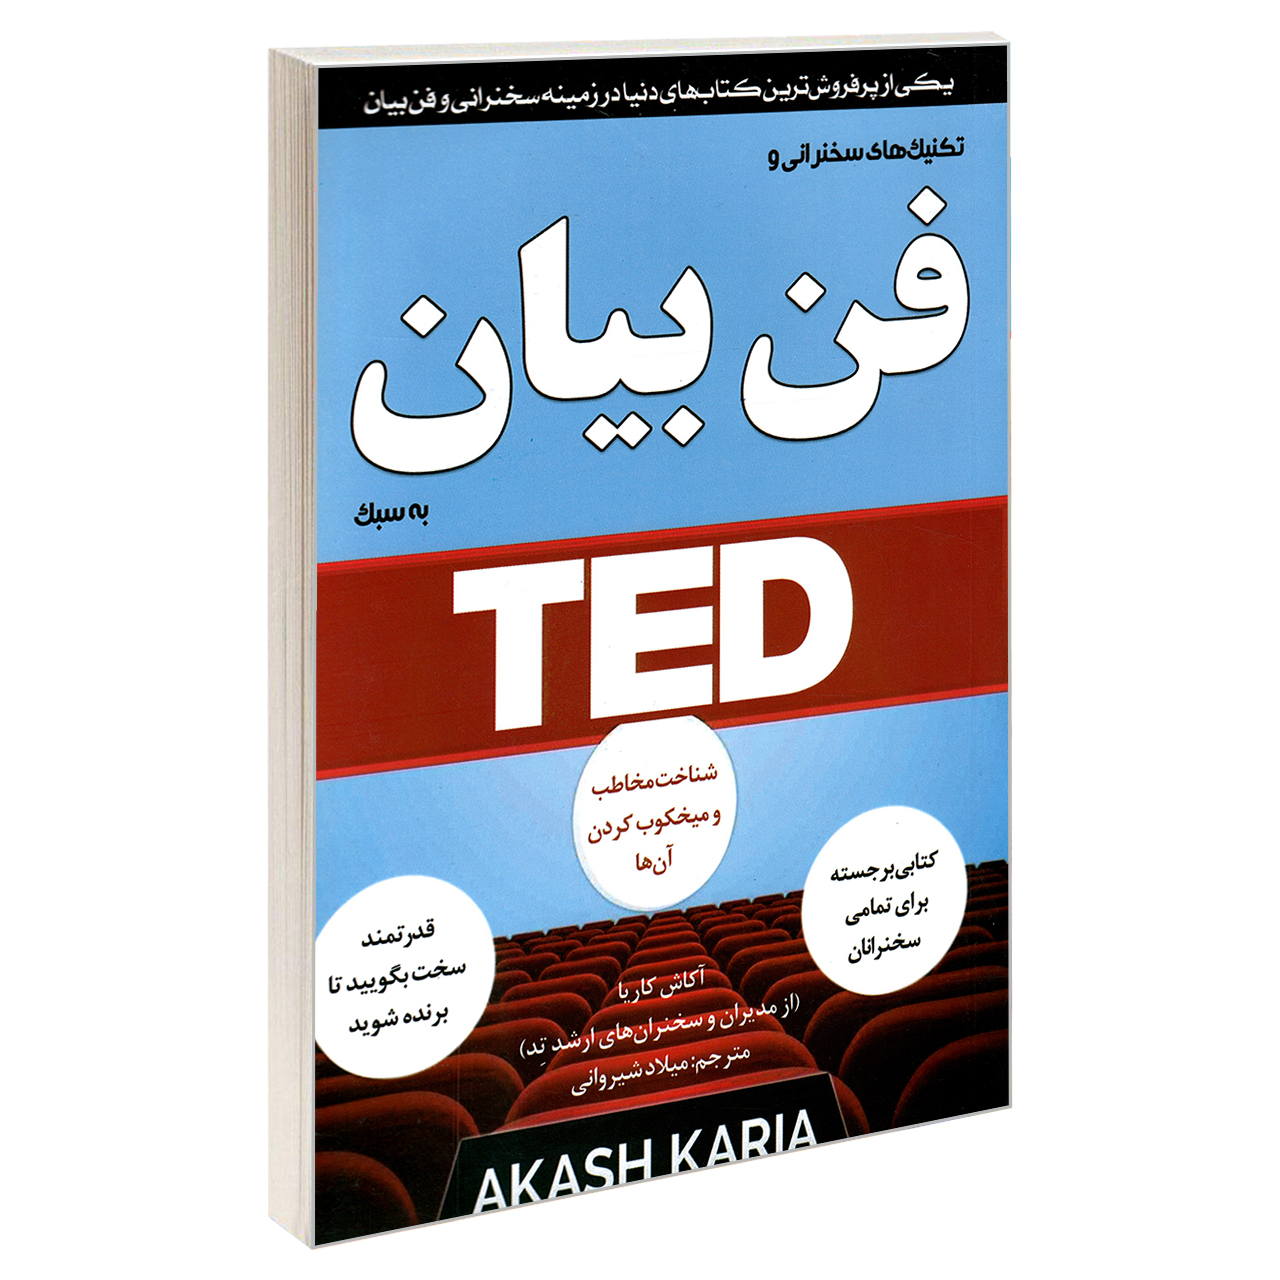 کتاب تکنیک های سخنرانی و فن بیان به سبک TED اثر آکاش کاریا انتشارات نبض دانش